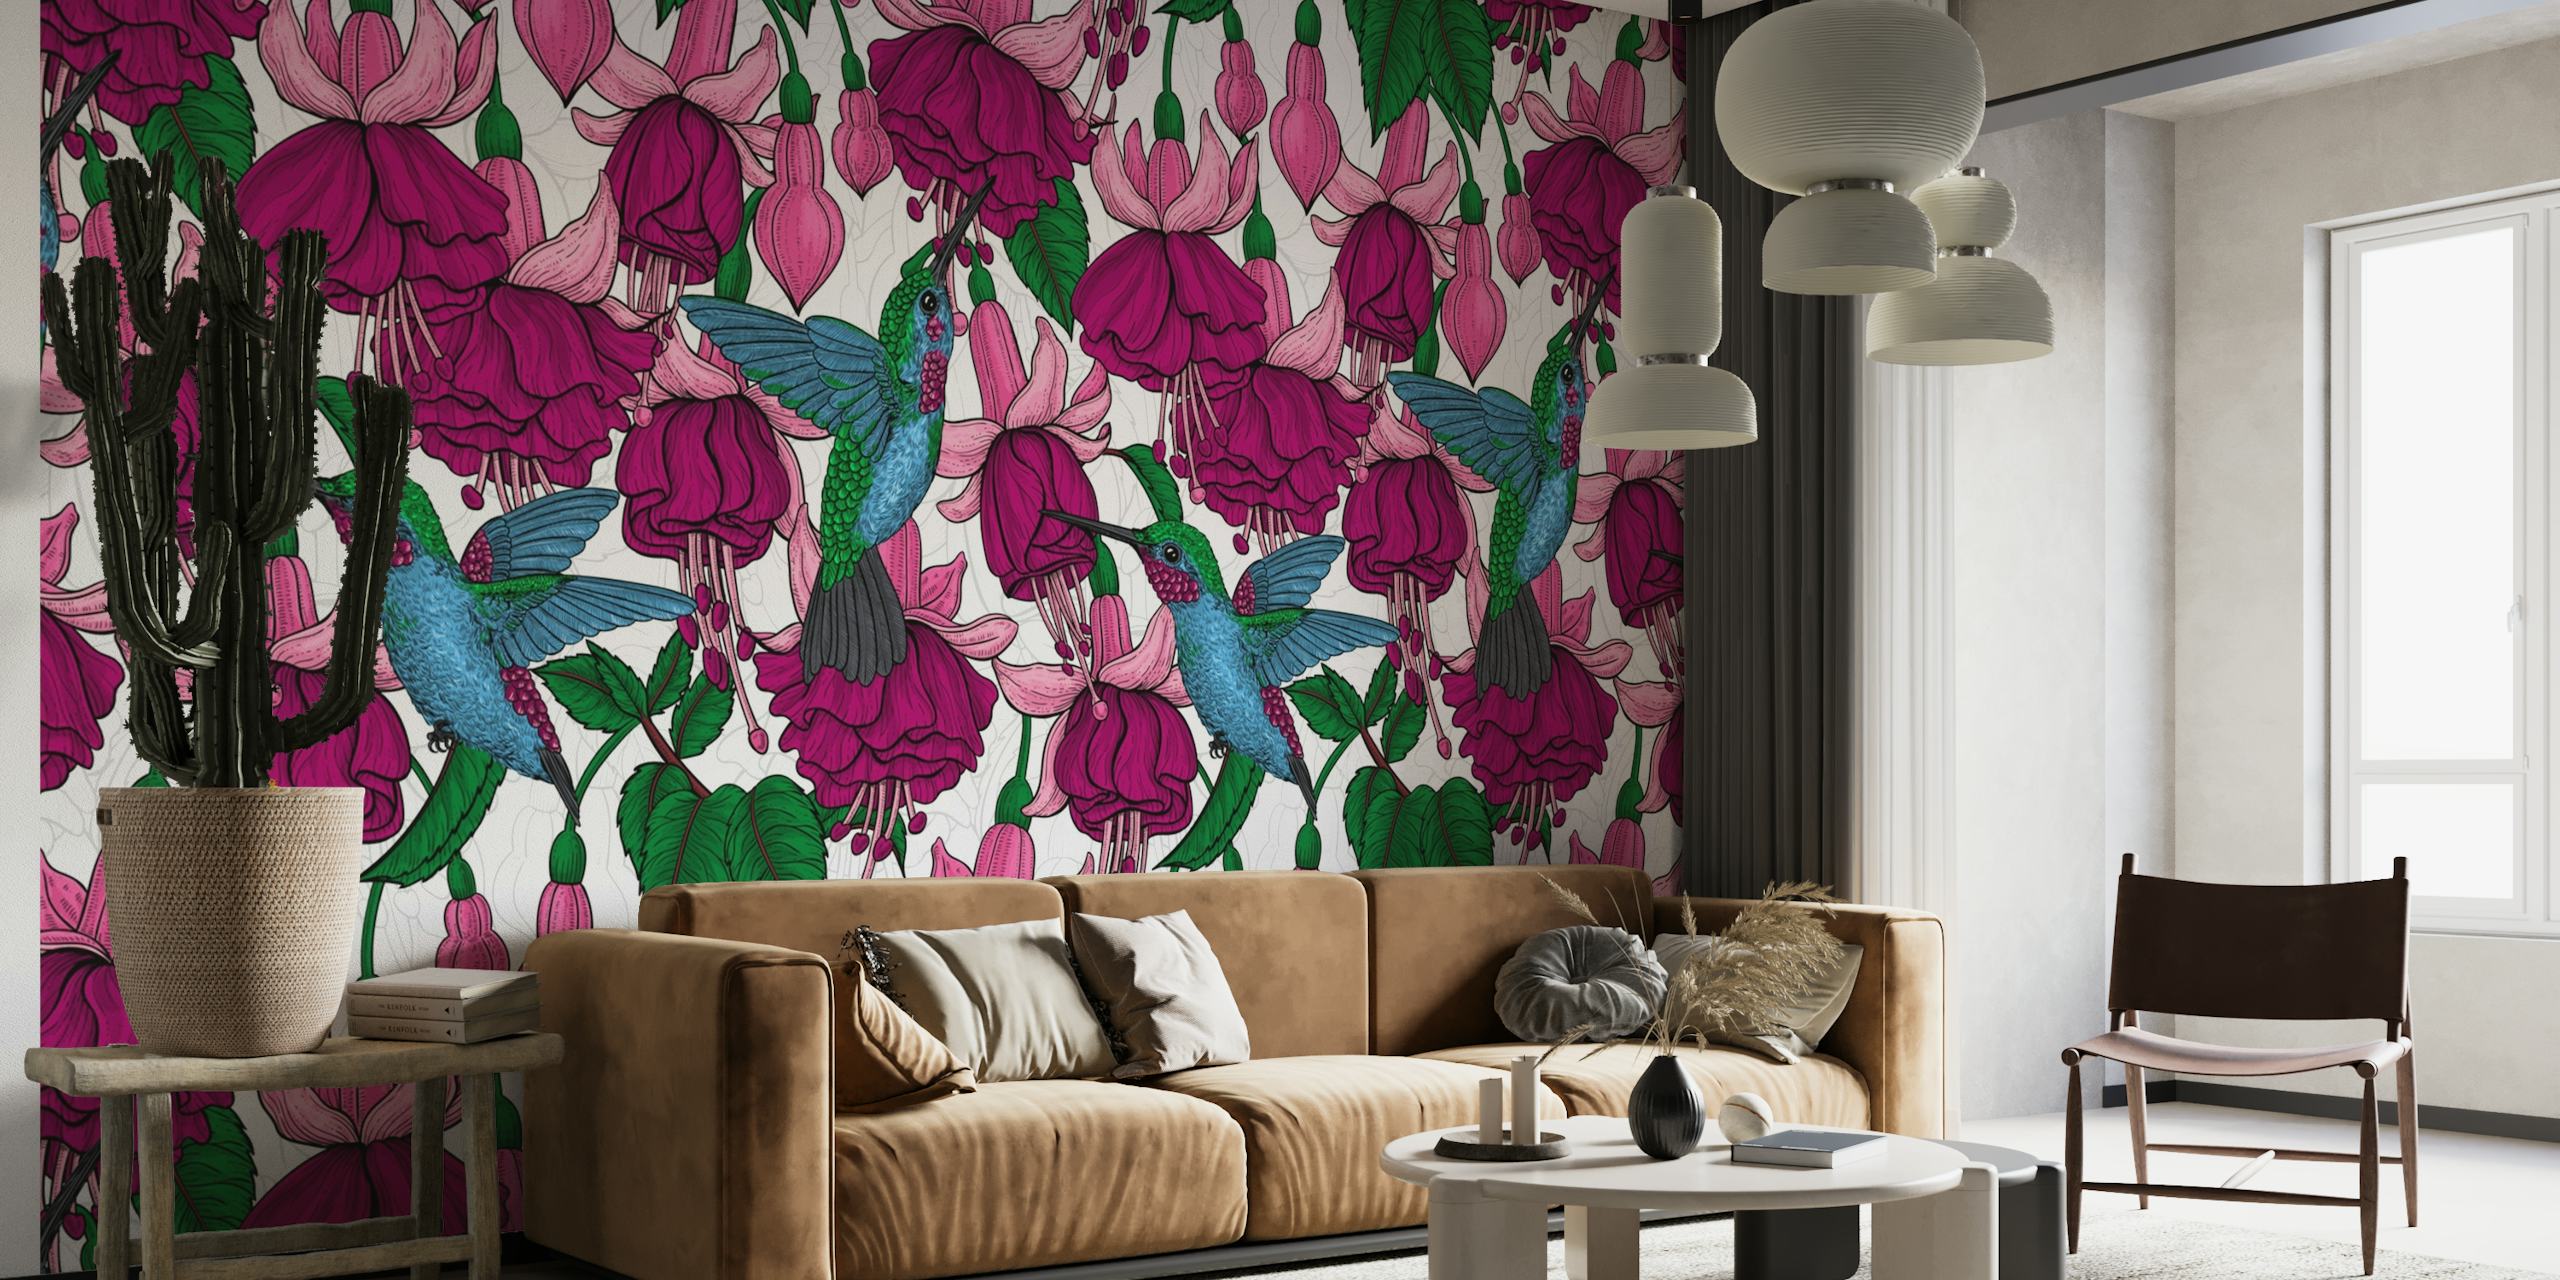 Une fresque murale avec des colibris et des fleurs rose fuchsia créant une scène de jardin enchanteresse.